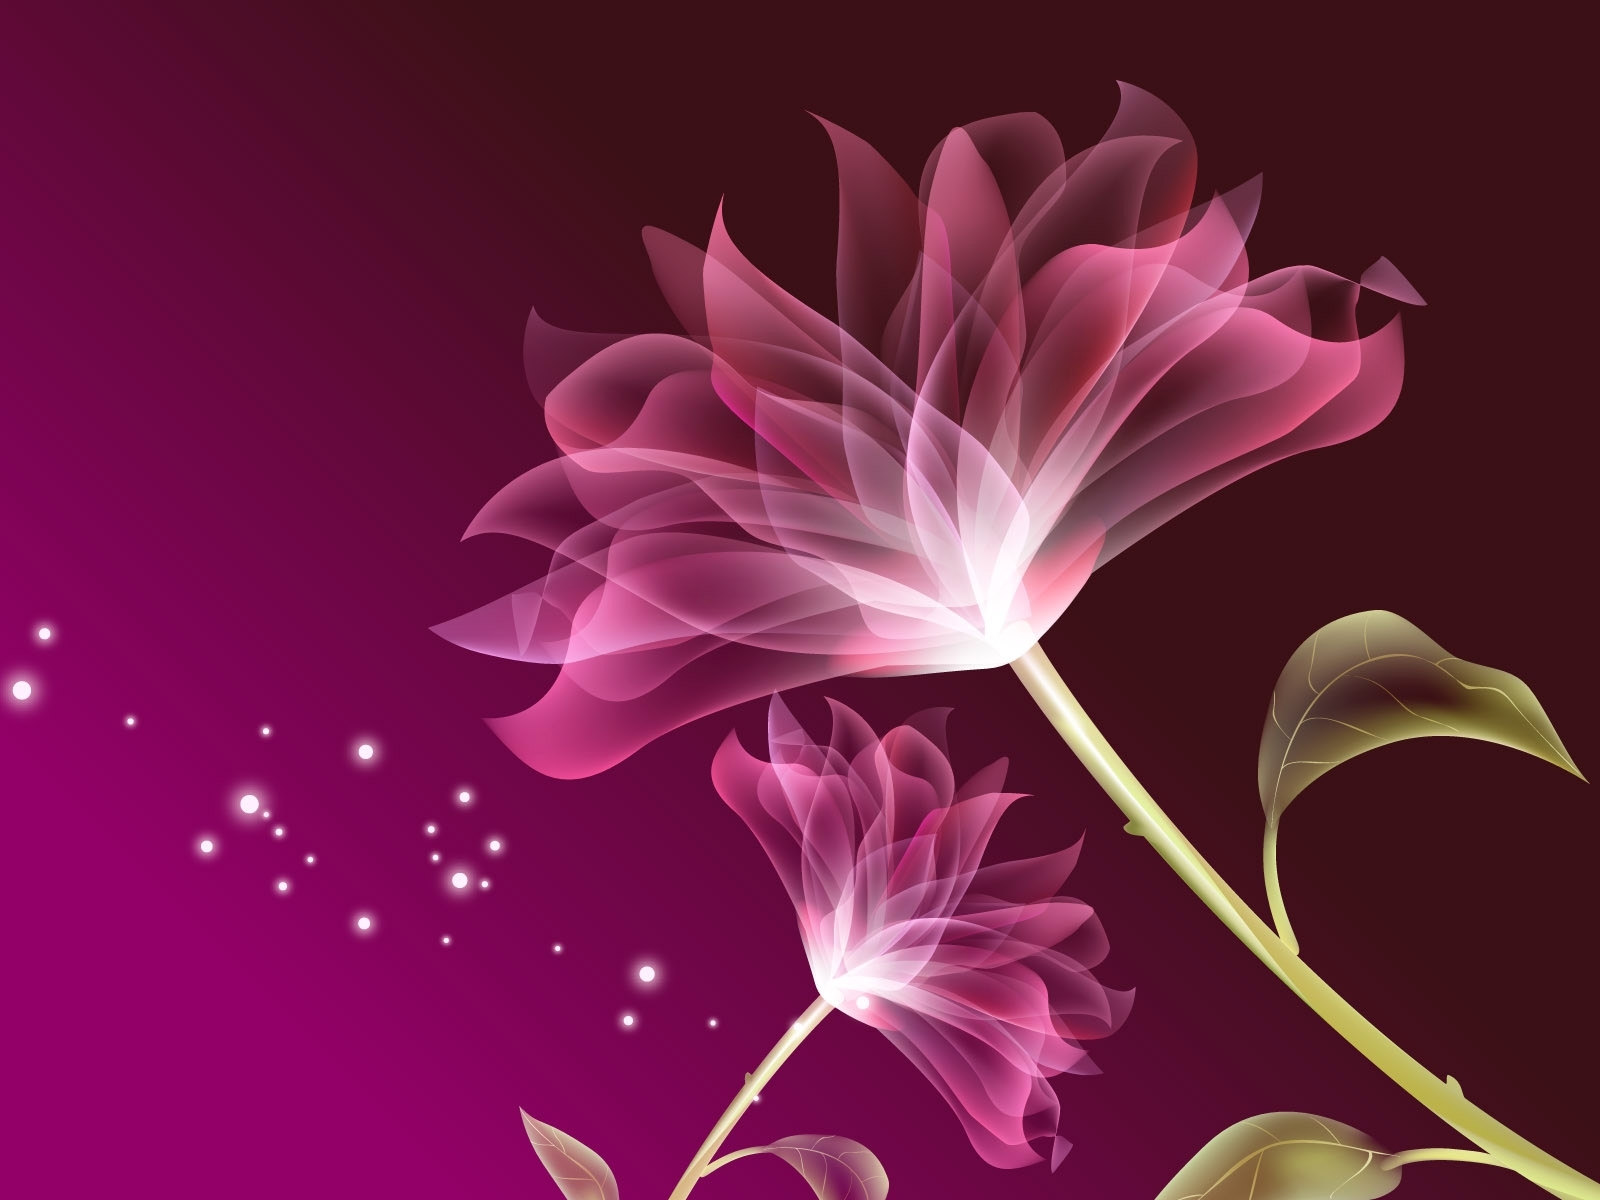 Mobile phone - lock screen - desktop wallpaper - screen saver - flowers -  prunus persica Stock Photo - Alamy